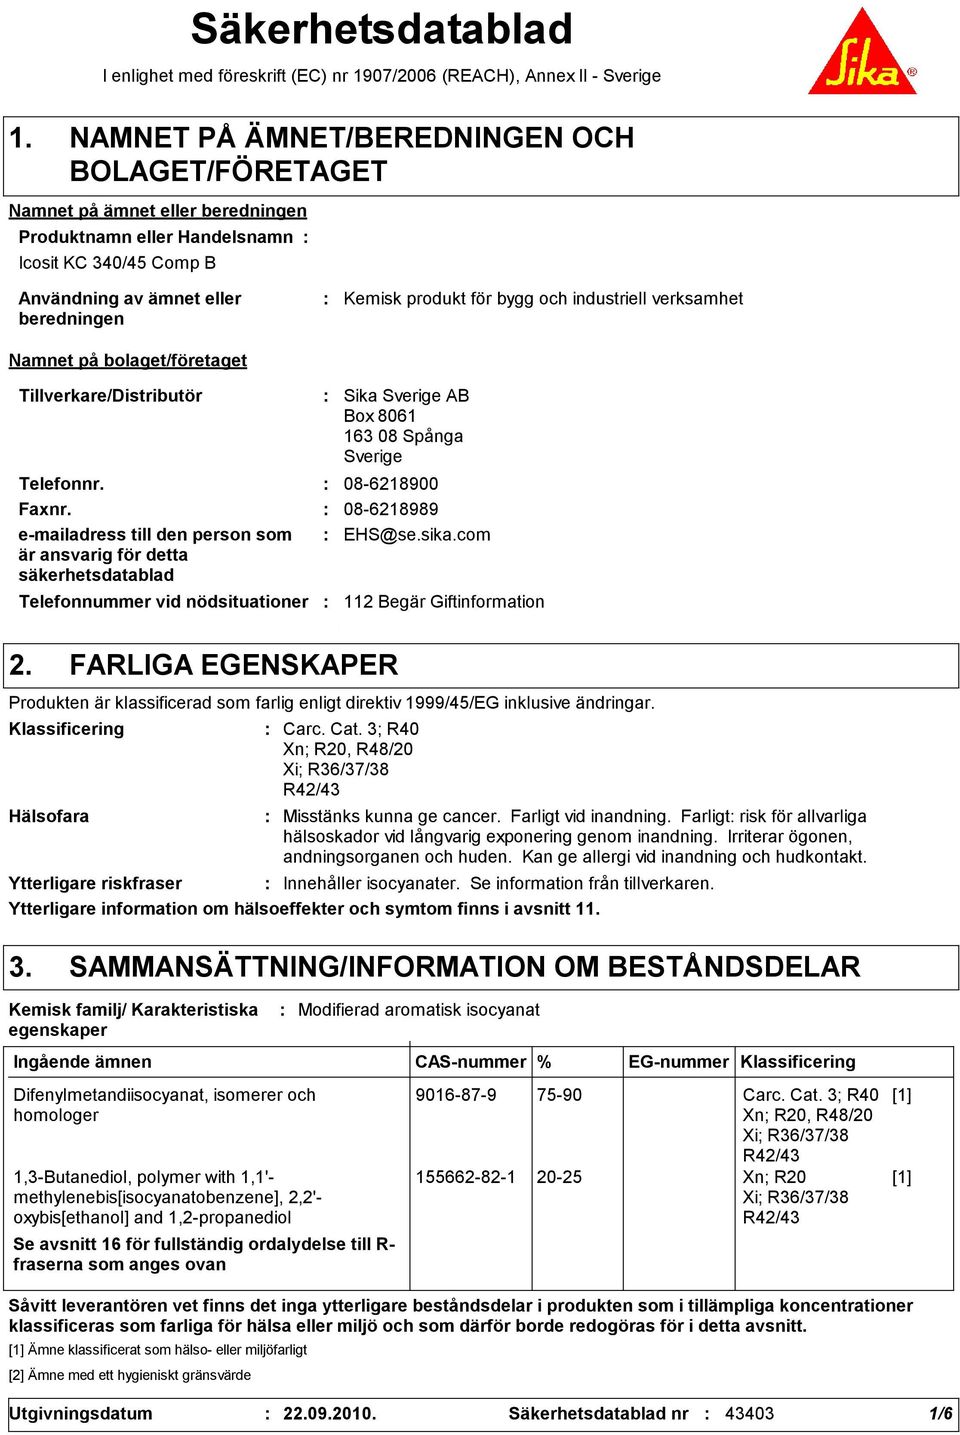 nödsituationer Sika Sverige AB Box 8061 163 08 Spånga Sverige Telefonnr. 08-6218900 Faxnr. 08-6218989 e-mailadress till den person som är ansvarig för detta säkerhetsdatablad EHS@se.sika.